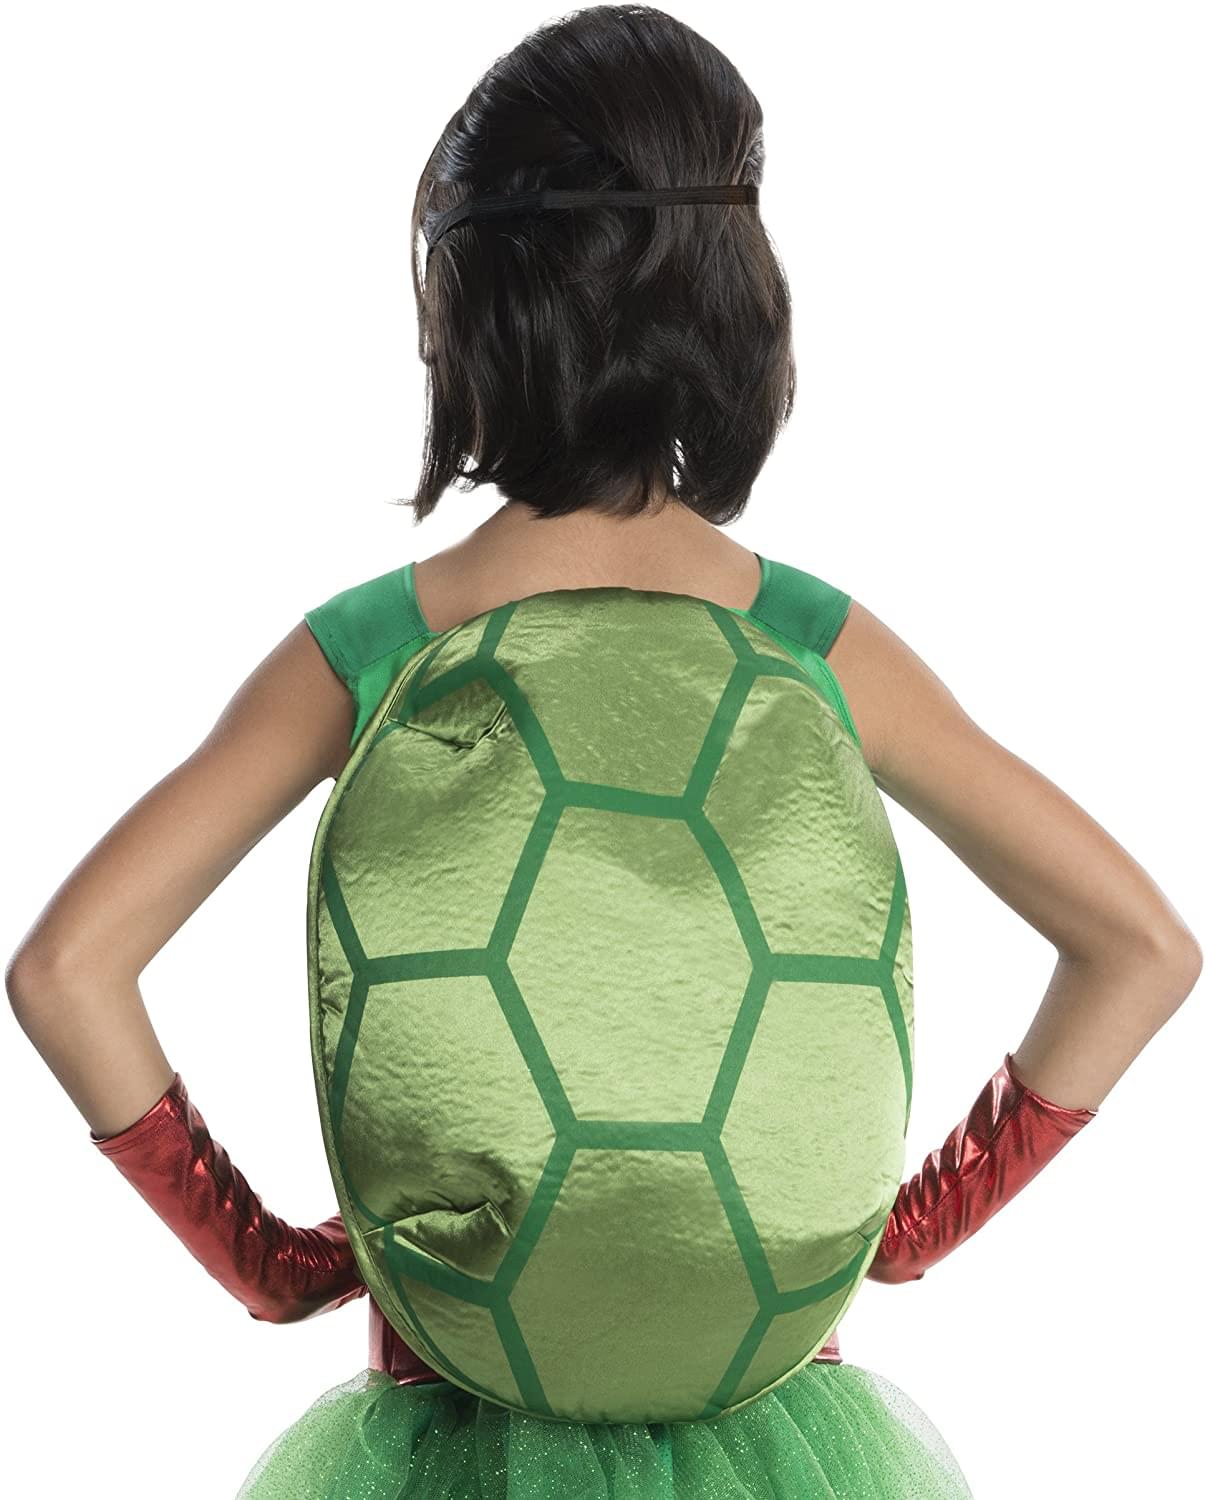 Ninja Turtles The Movie Raphael Tutu Dress Child Costume